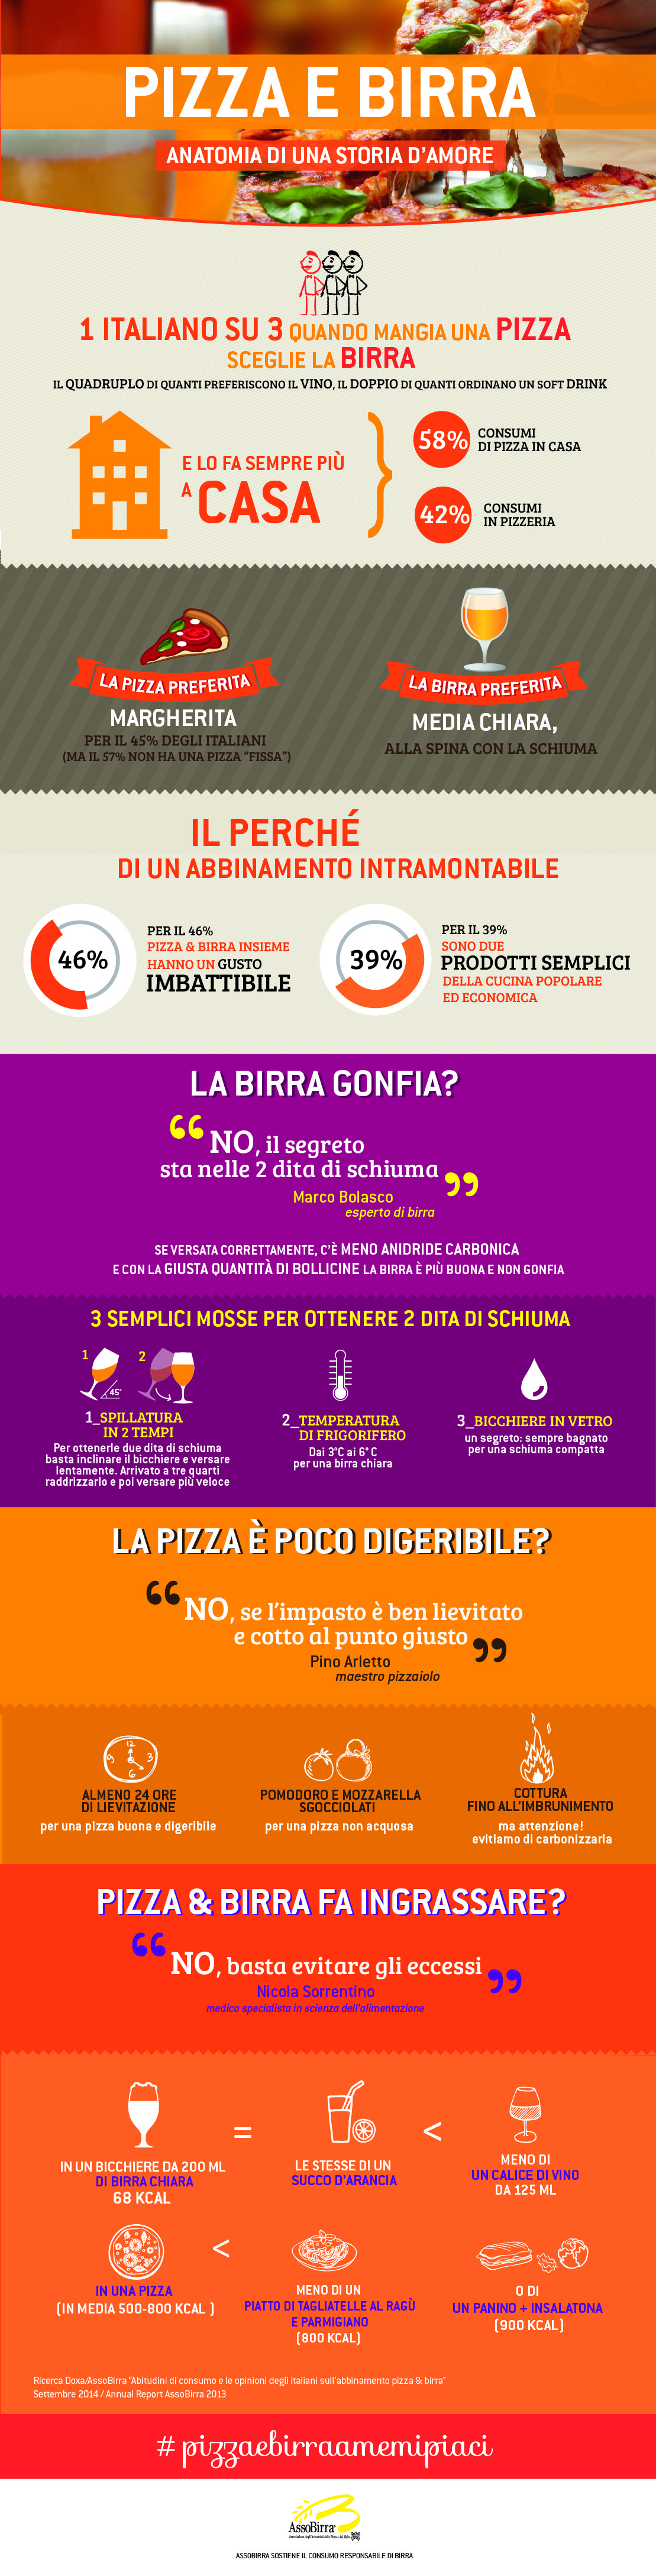 infografica_Pizza_e_Birra